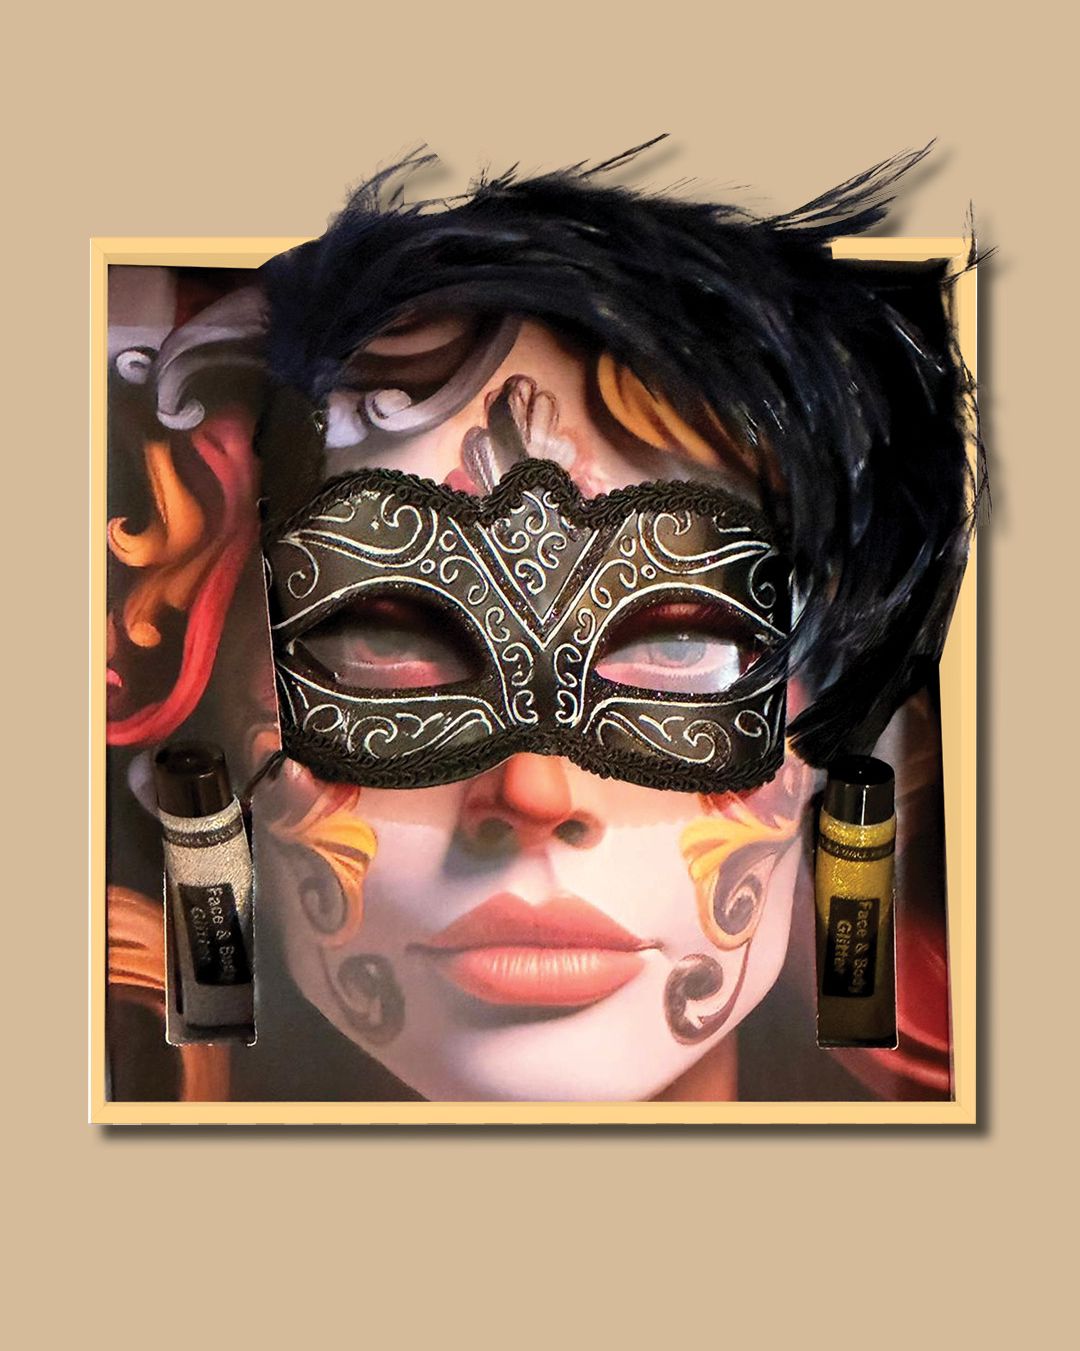 מארז Eye mask. 
עיצוב המארז כולל מיתוג צבעוני על גבי המכסה. 